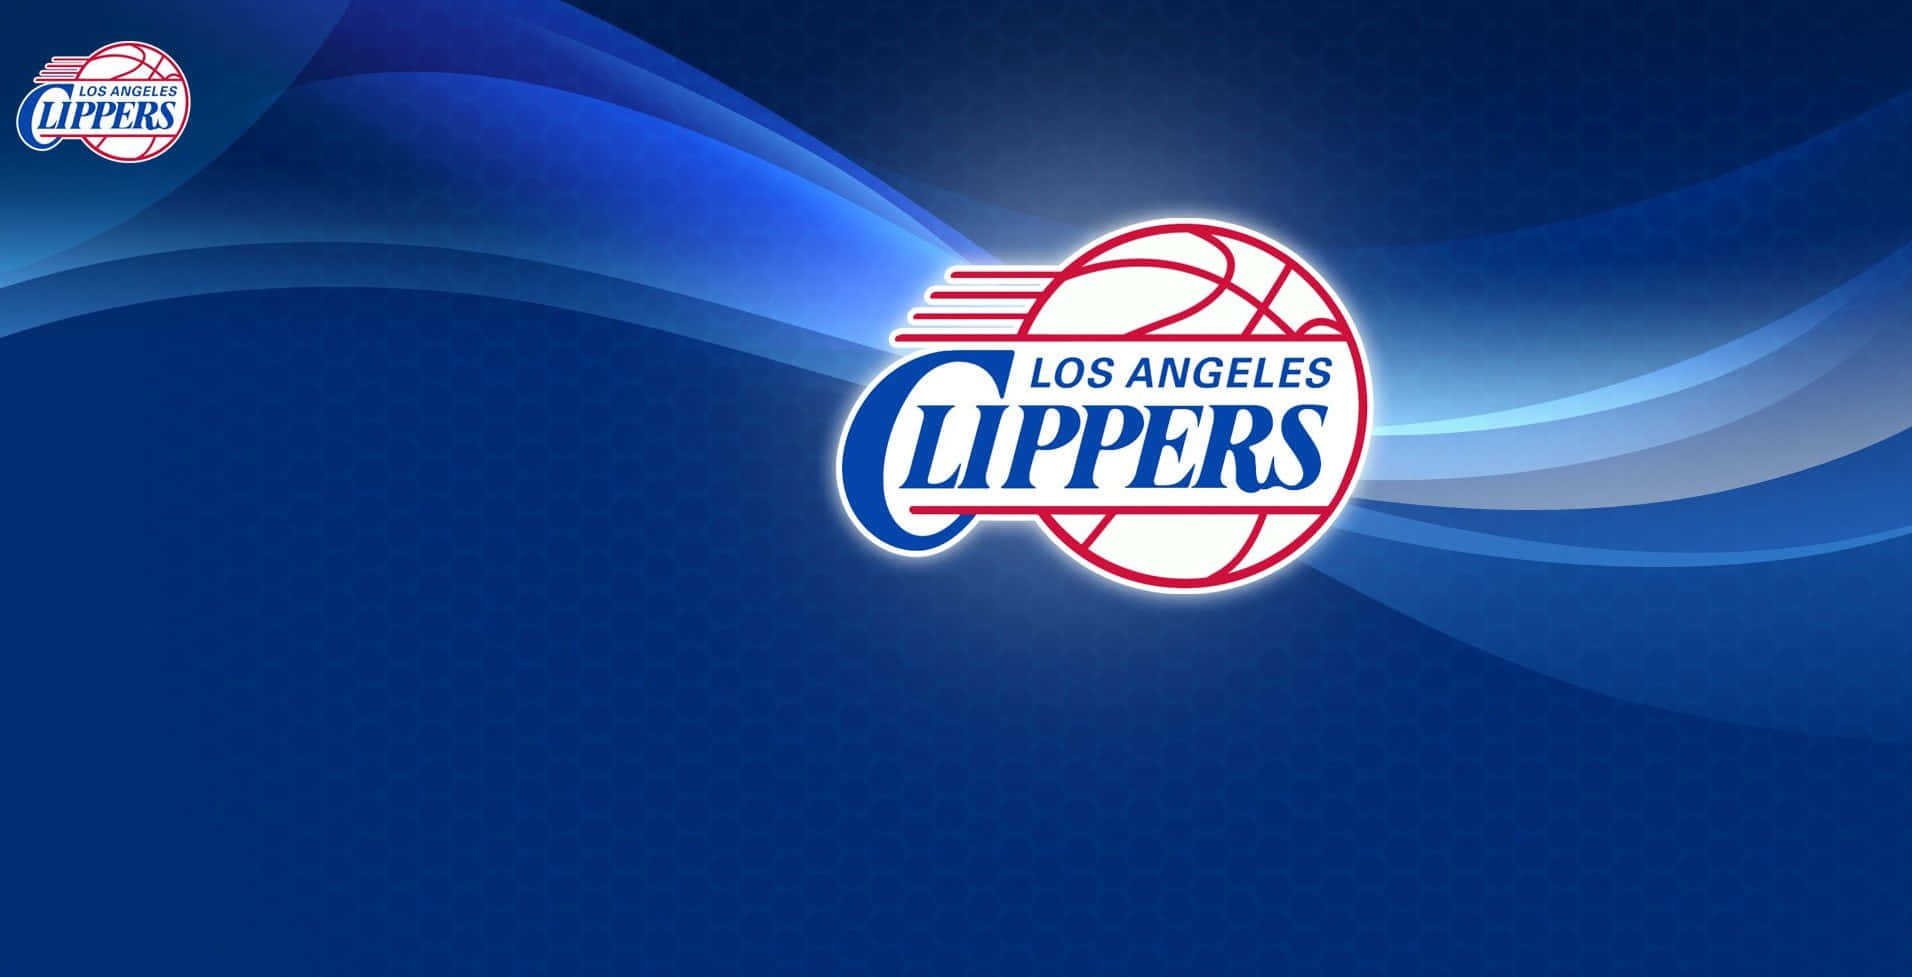 Logotipode Los La Clippers, Equipo De La Nba, En Color Azul Fondo de pantalla